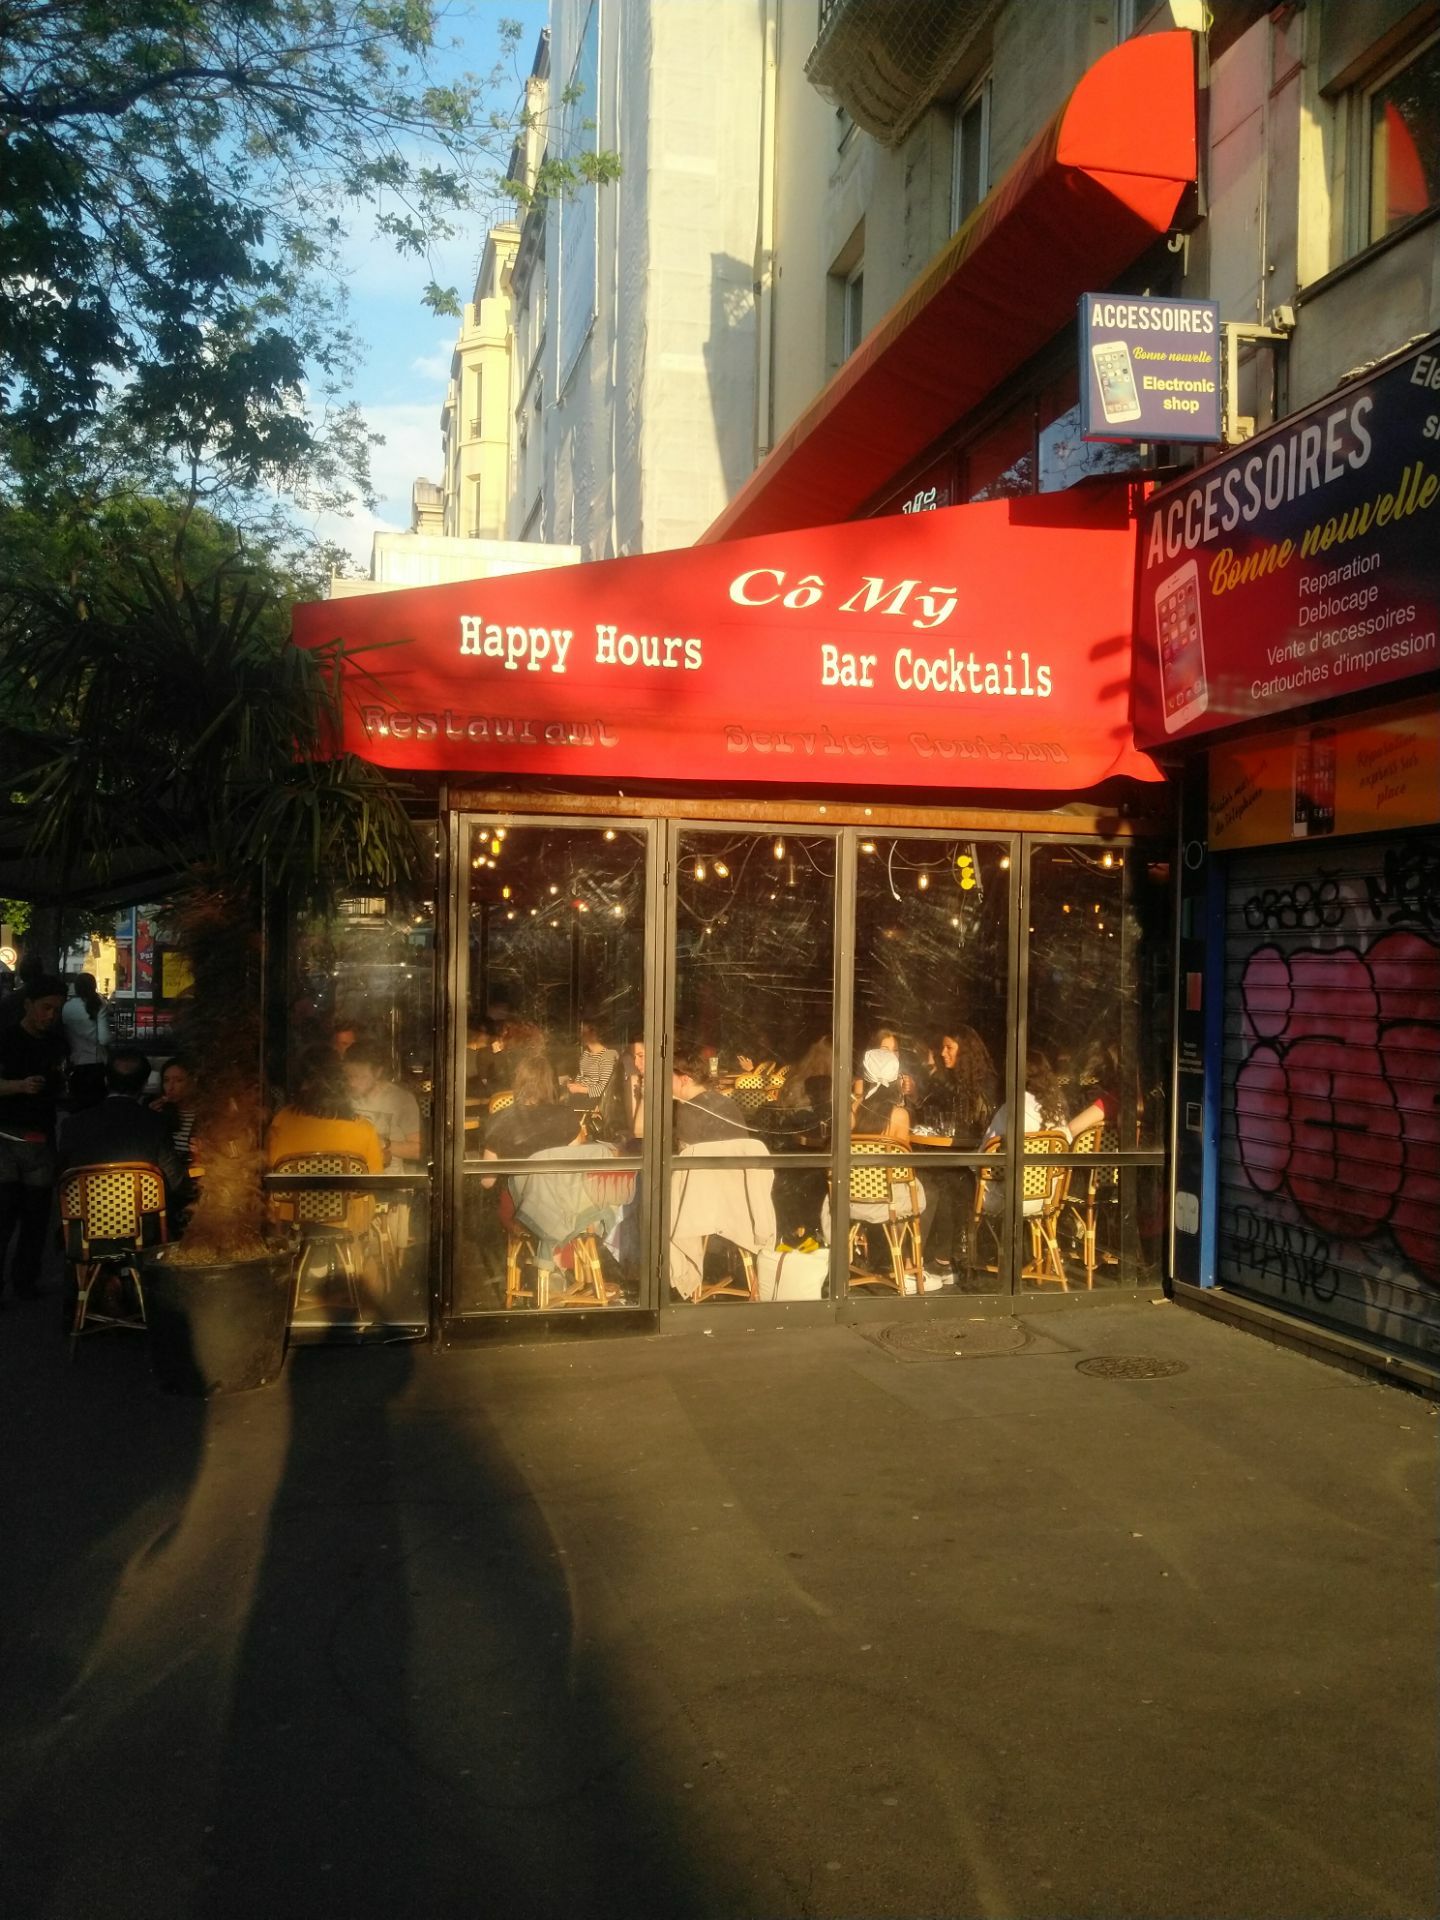 Co My Cafe Reviews: Food & Drinks in Ile-De-France Paris– Trip.com